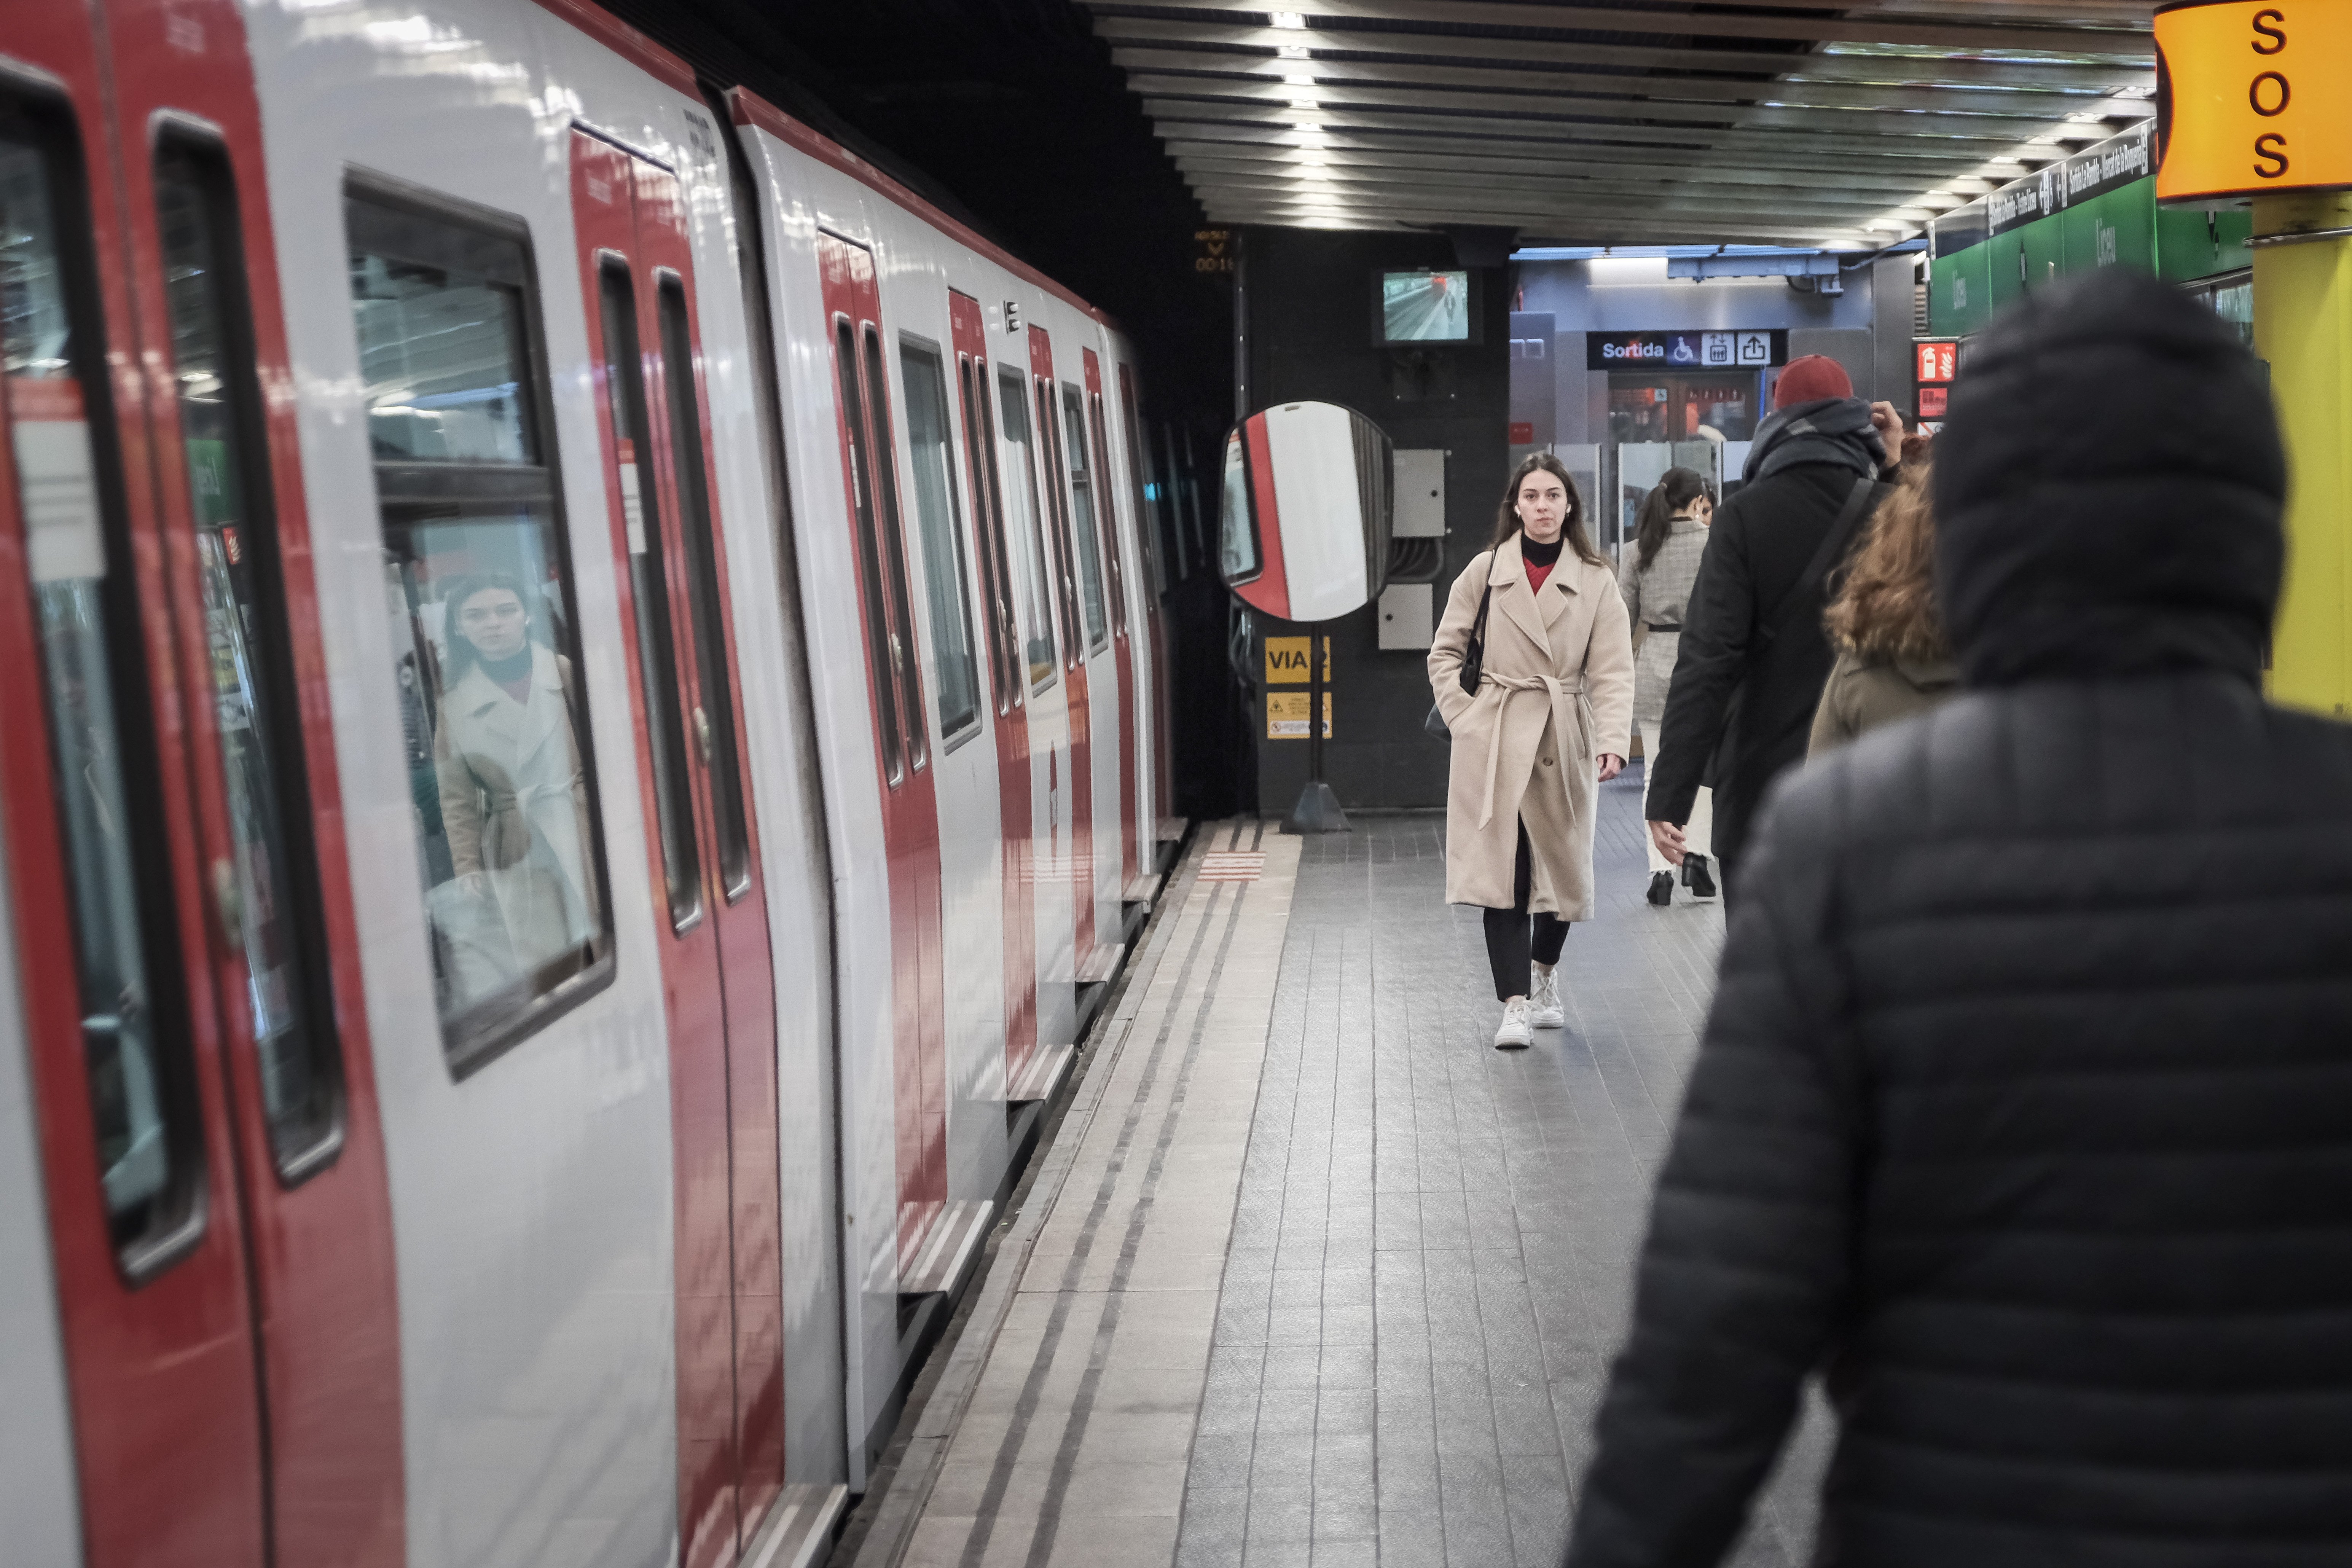 Incidencia en la L1: el metro no para en Urgell sentido Bellvitge por un escape de agua